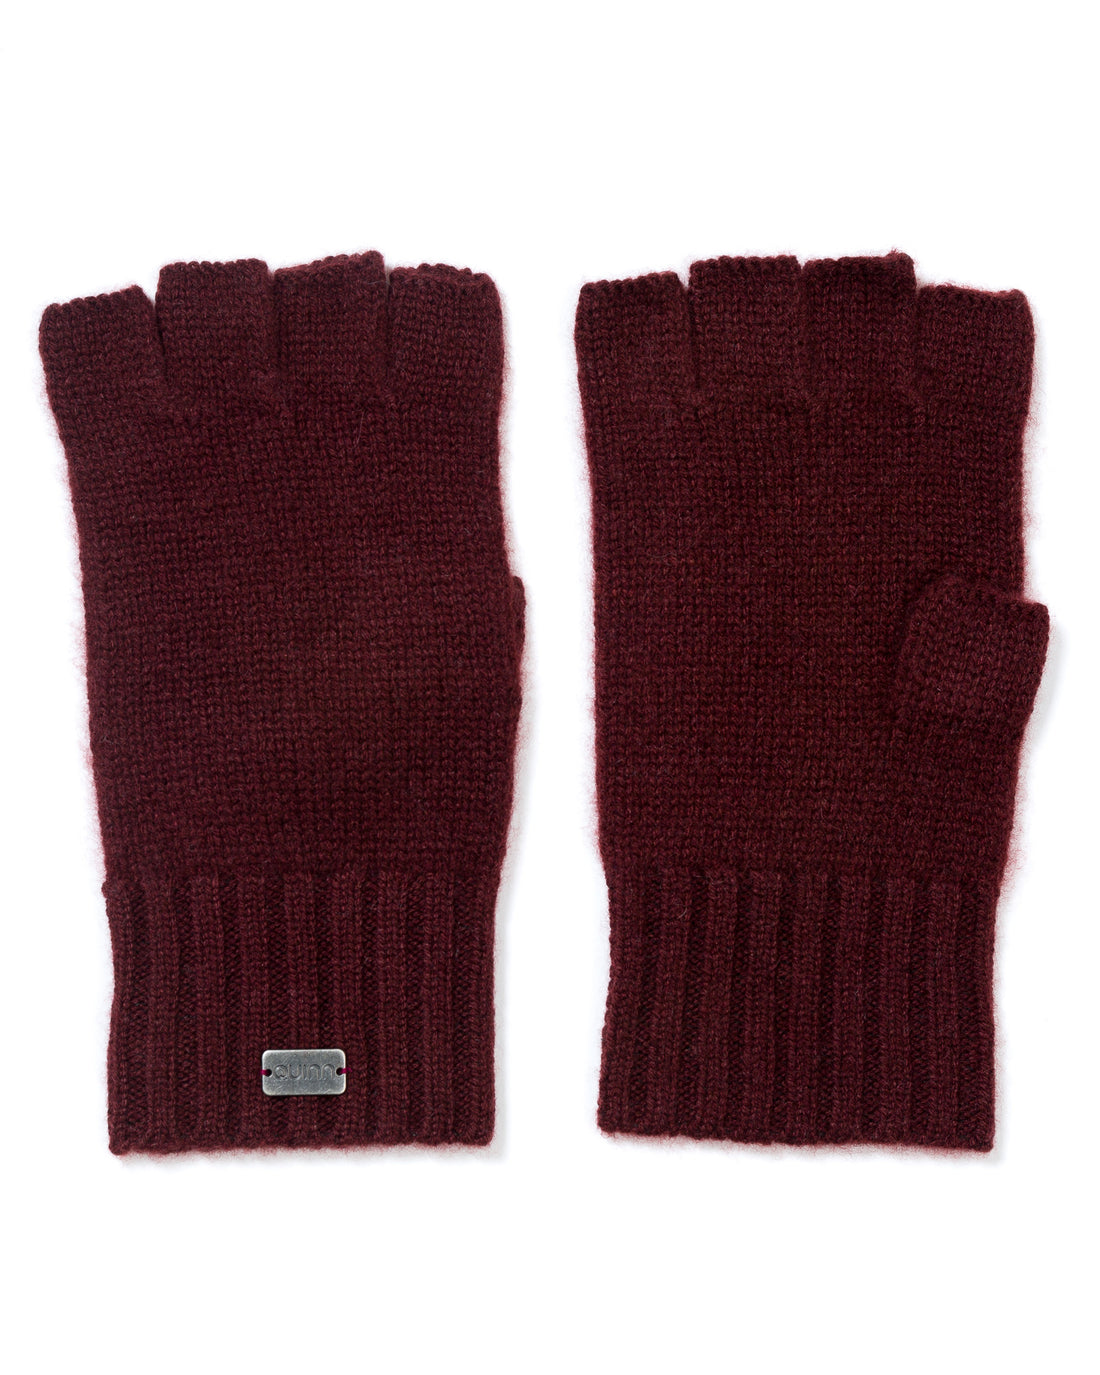 irwin fingerless gloves